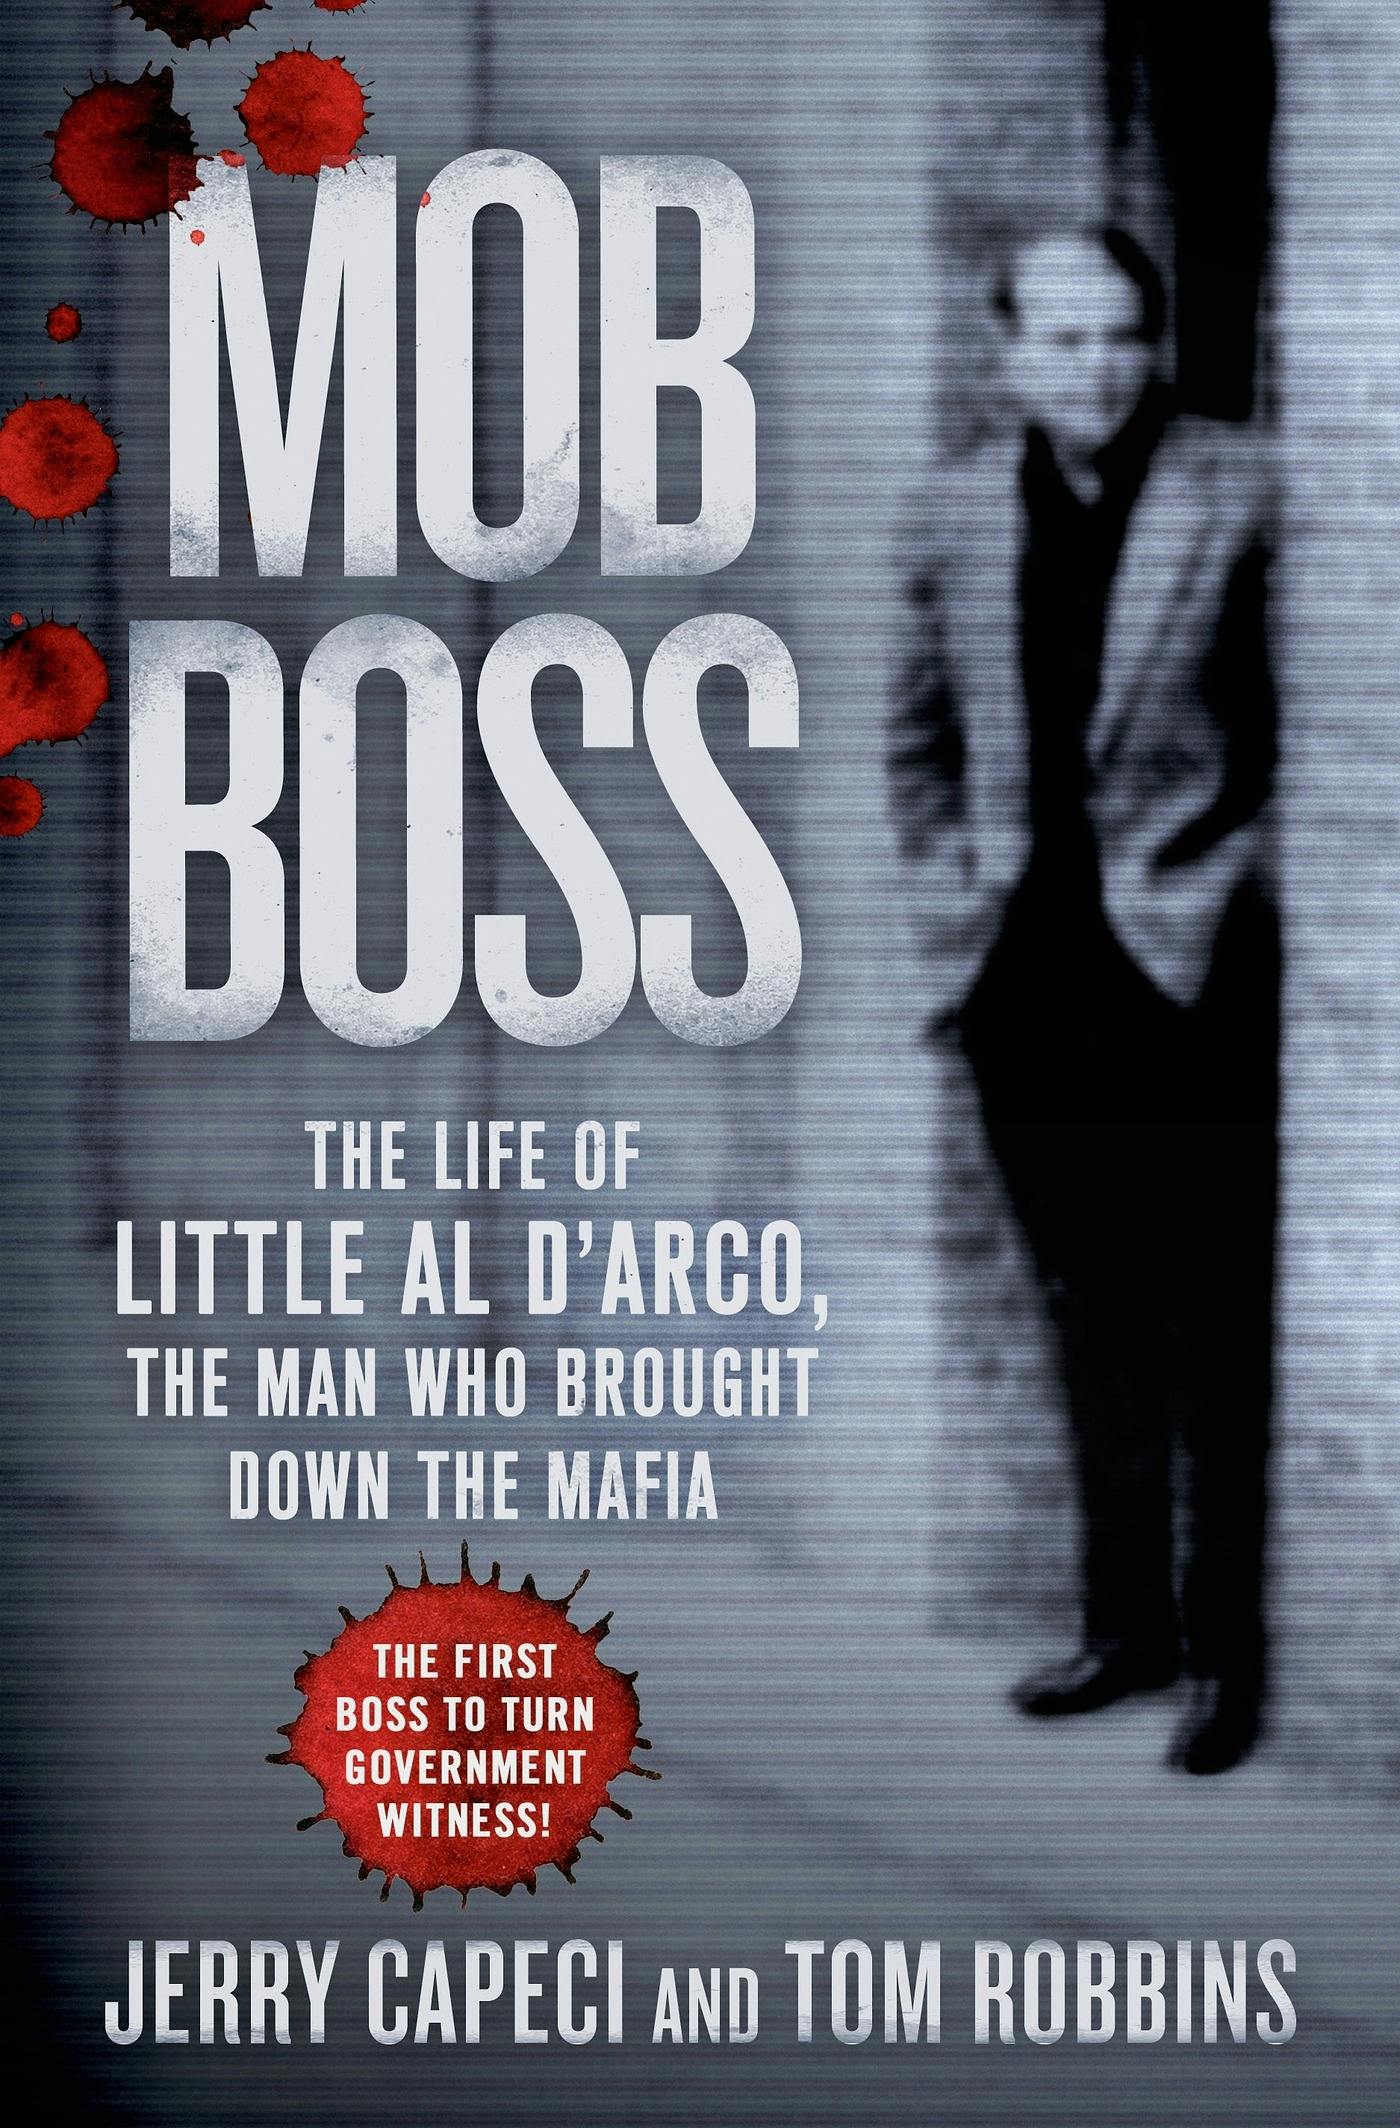 Gotti: The Rise and Fall of a Real Life Mafia Don, Full Movie